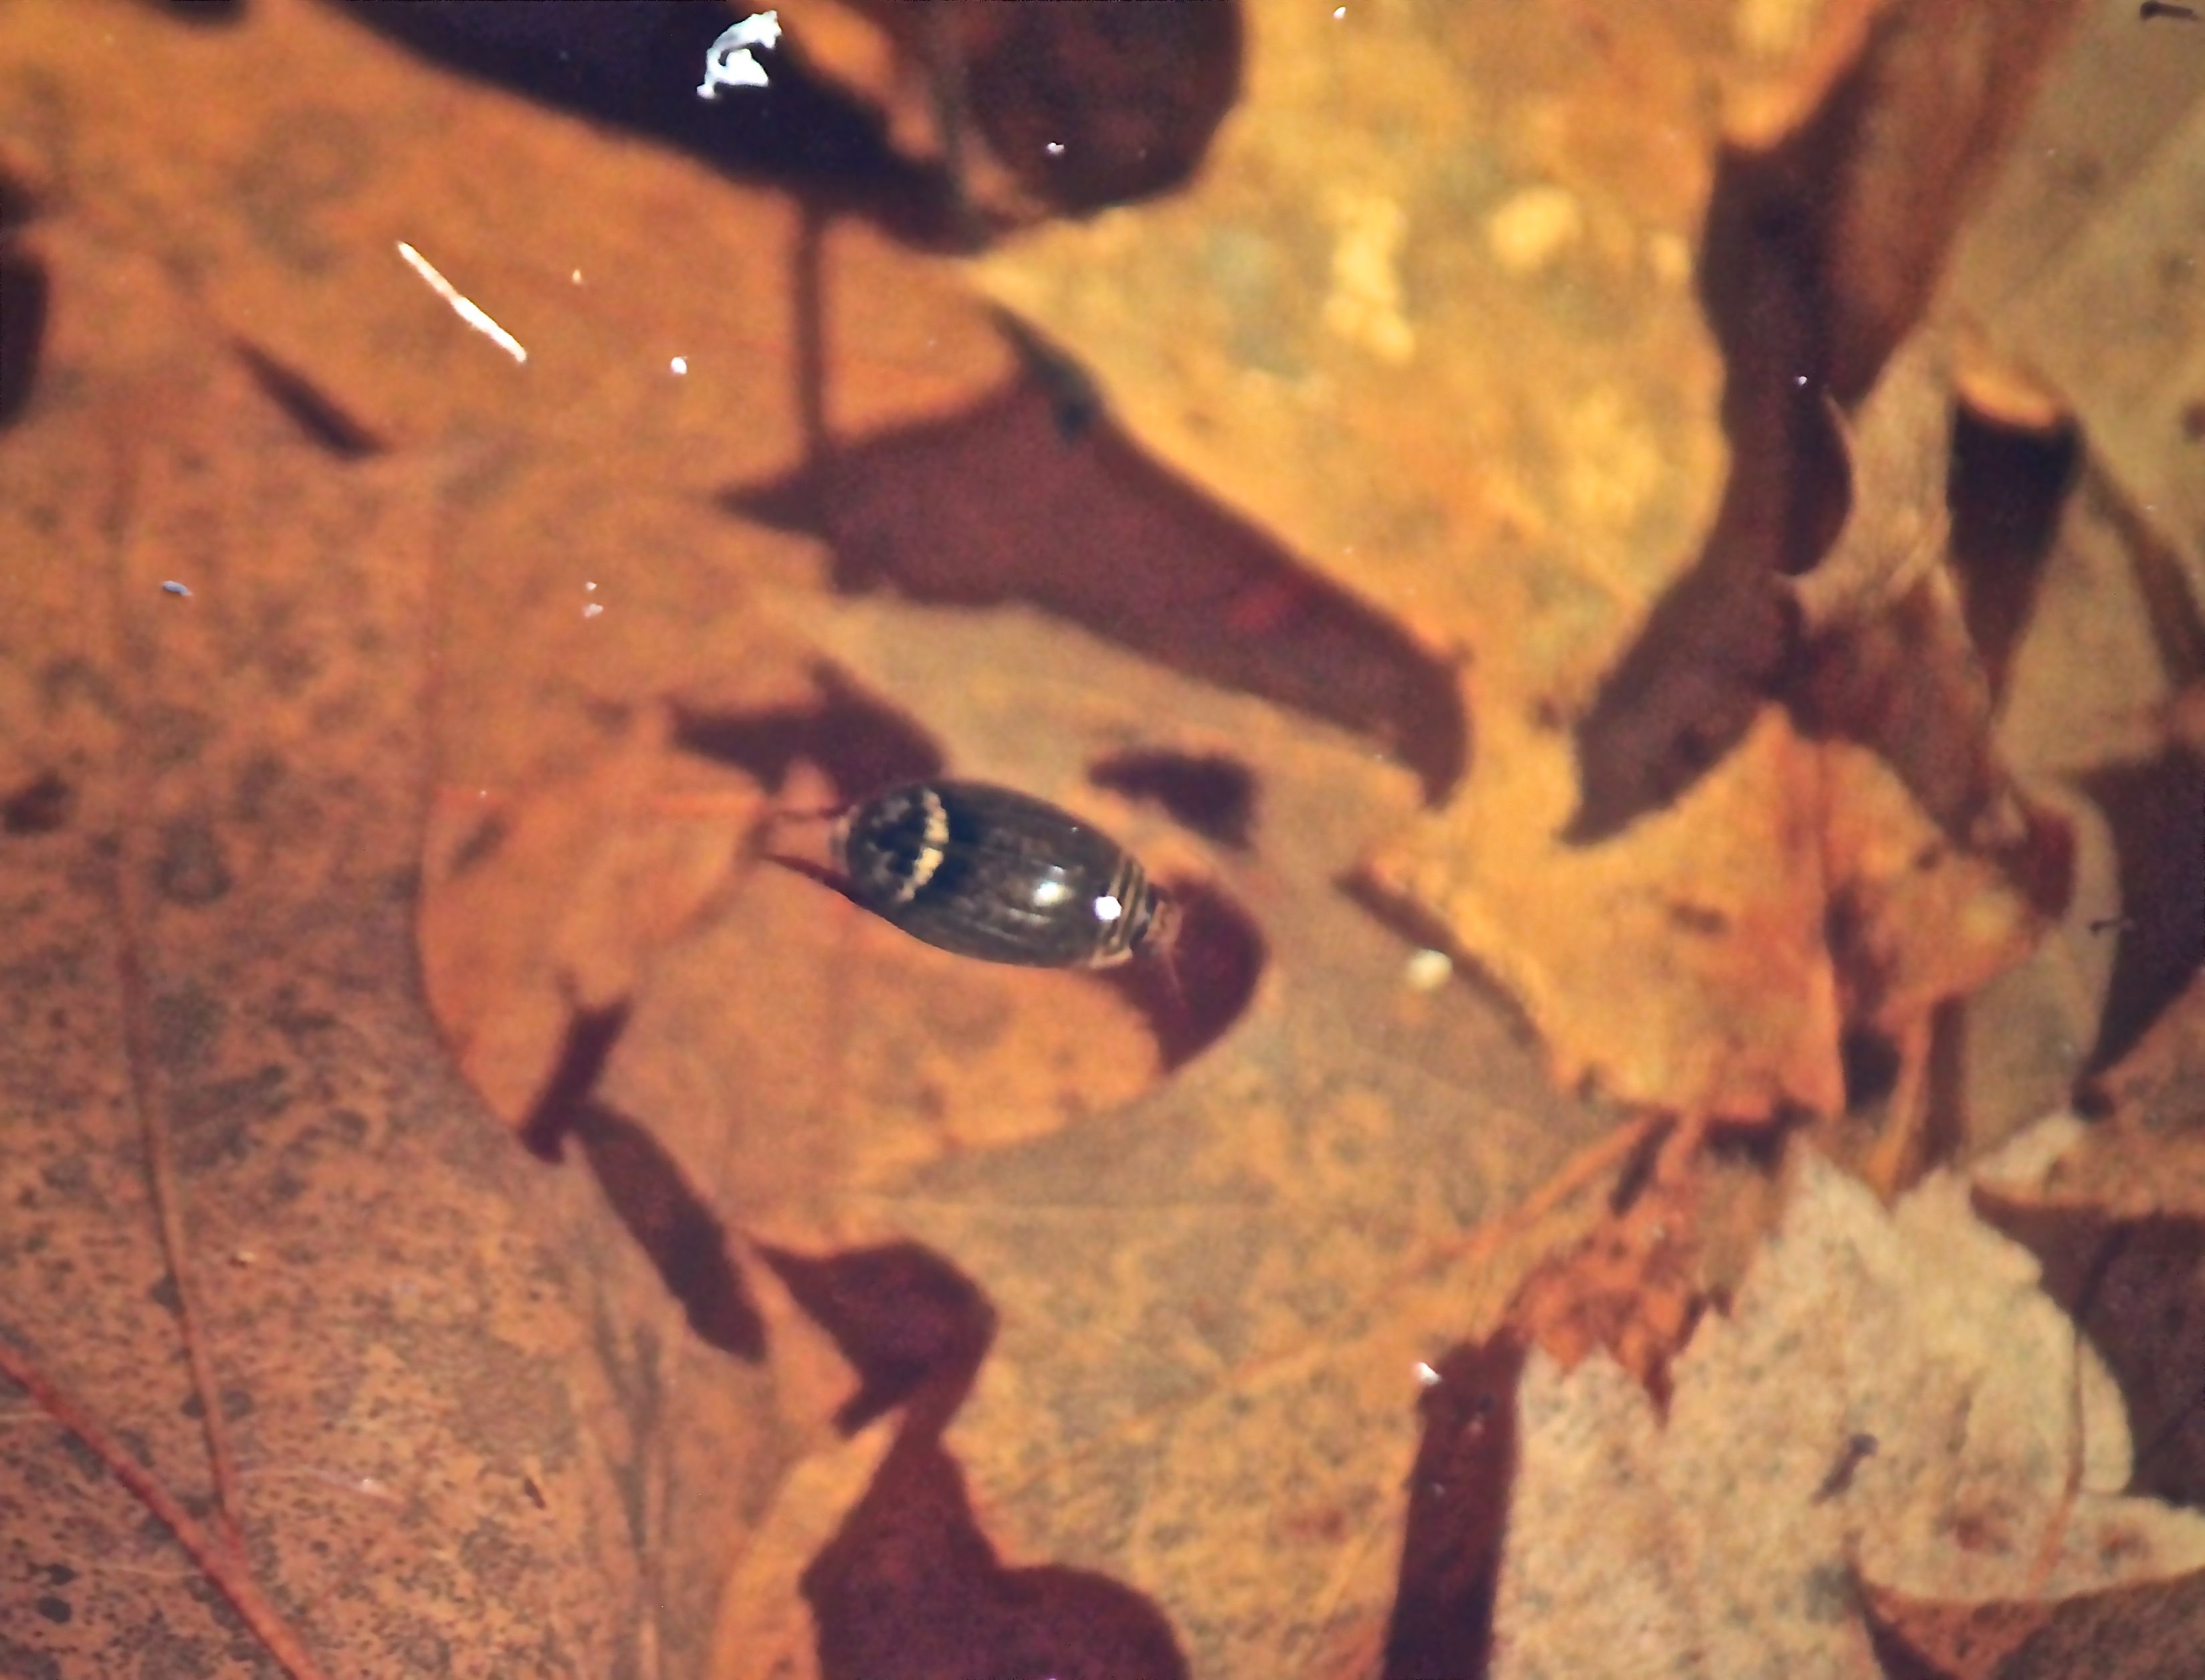 v-diving beetle